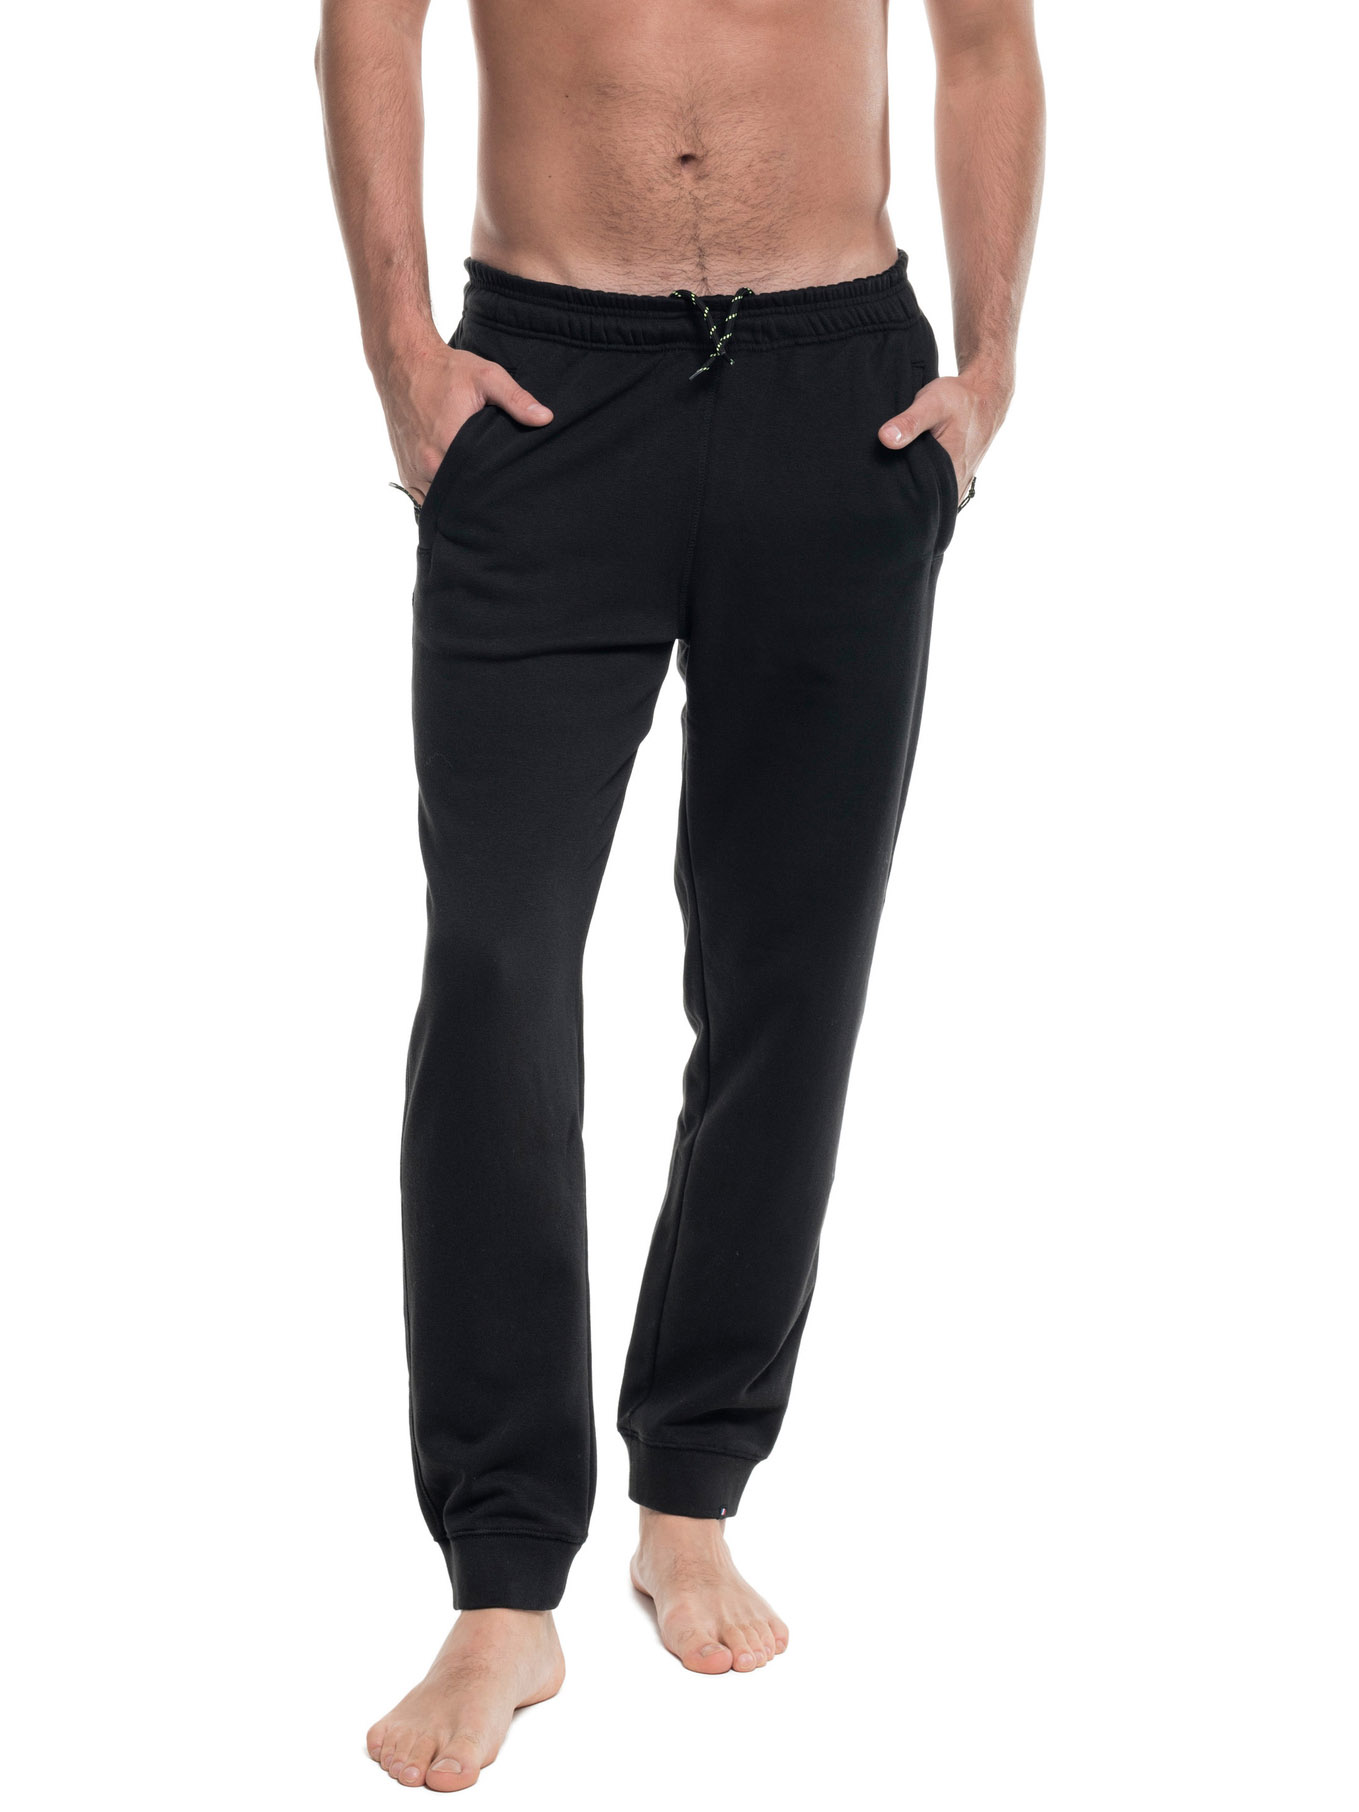 Мужские домашние / спортивные брюки с манжетами  Promostars 73201 Relax